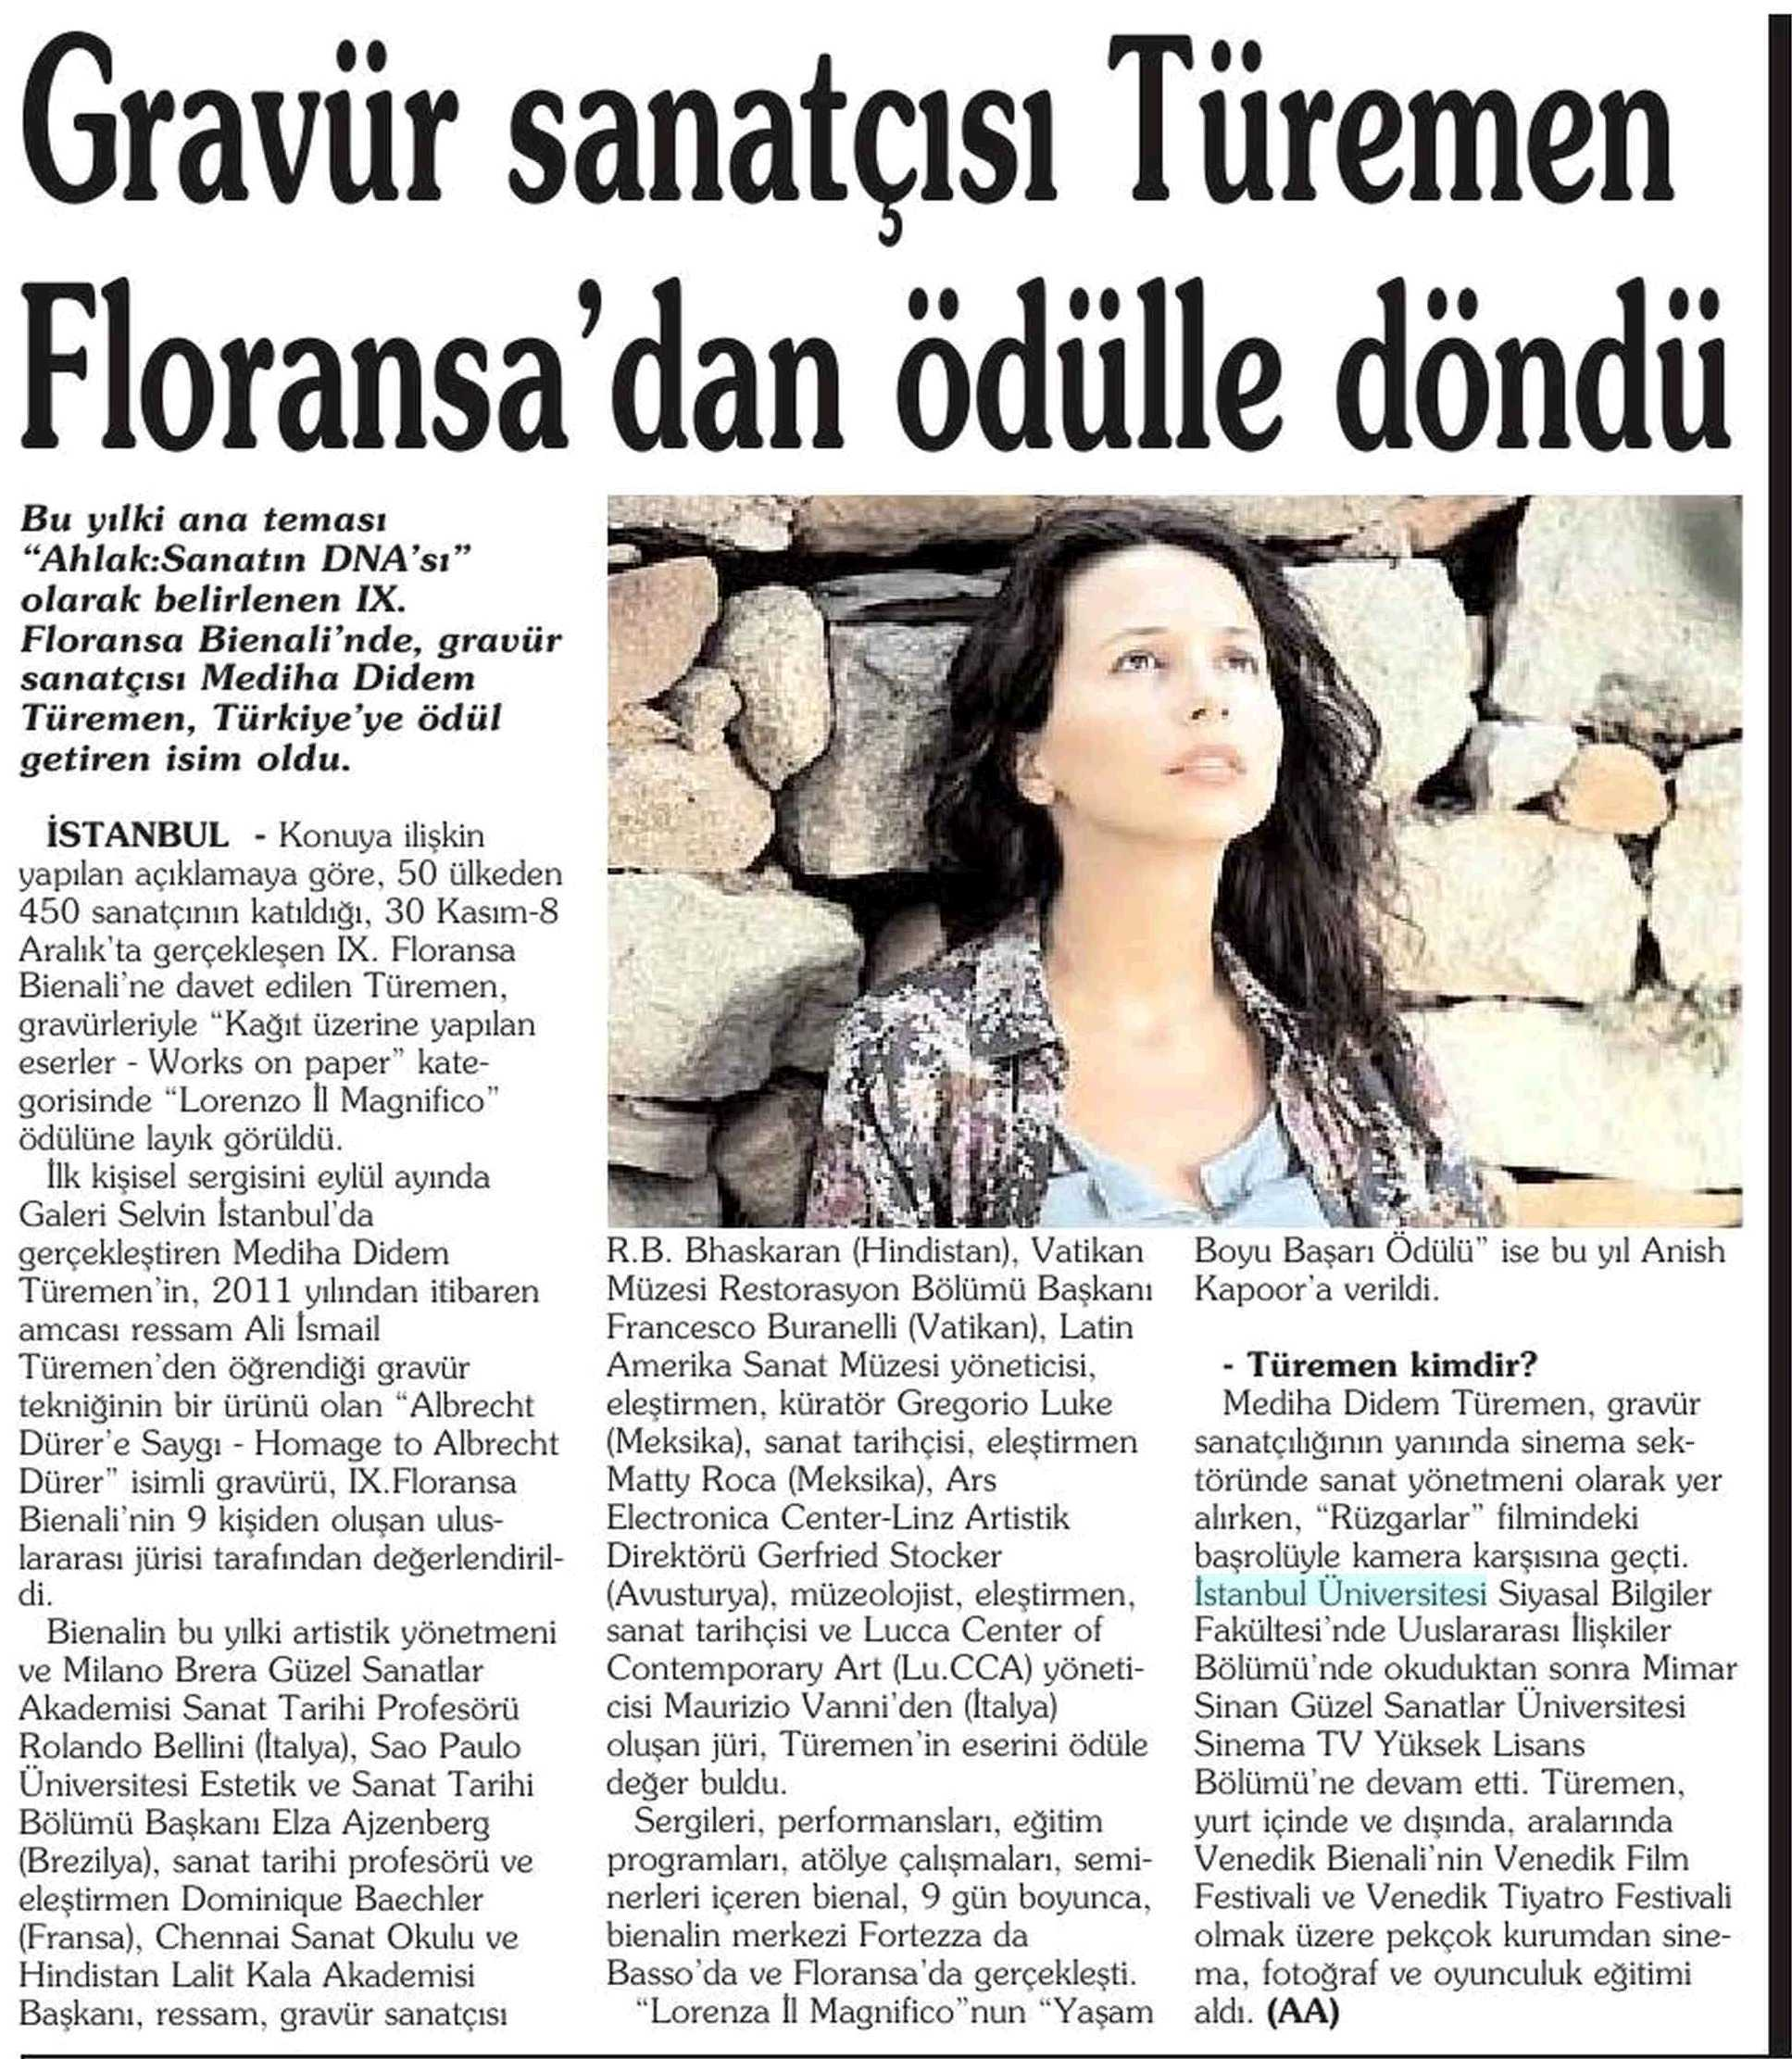 GRAVÜR SANATÇISI TÜREMEN FLORANSA'DAN ÖDÜLLE DÖNDÜ Yayın Adı : Ankara Yarın